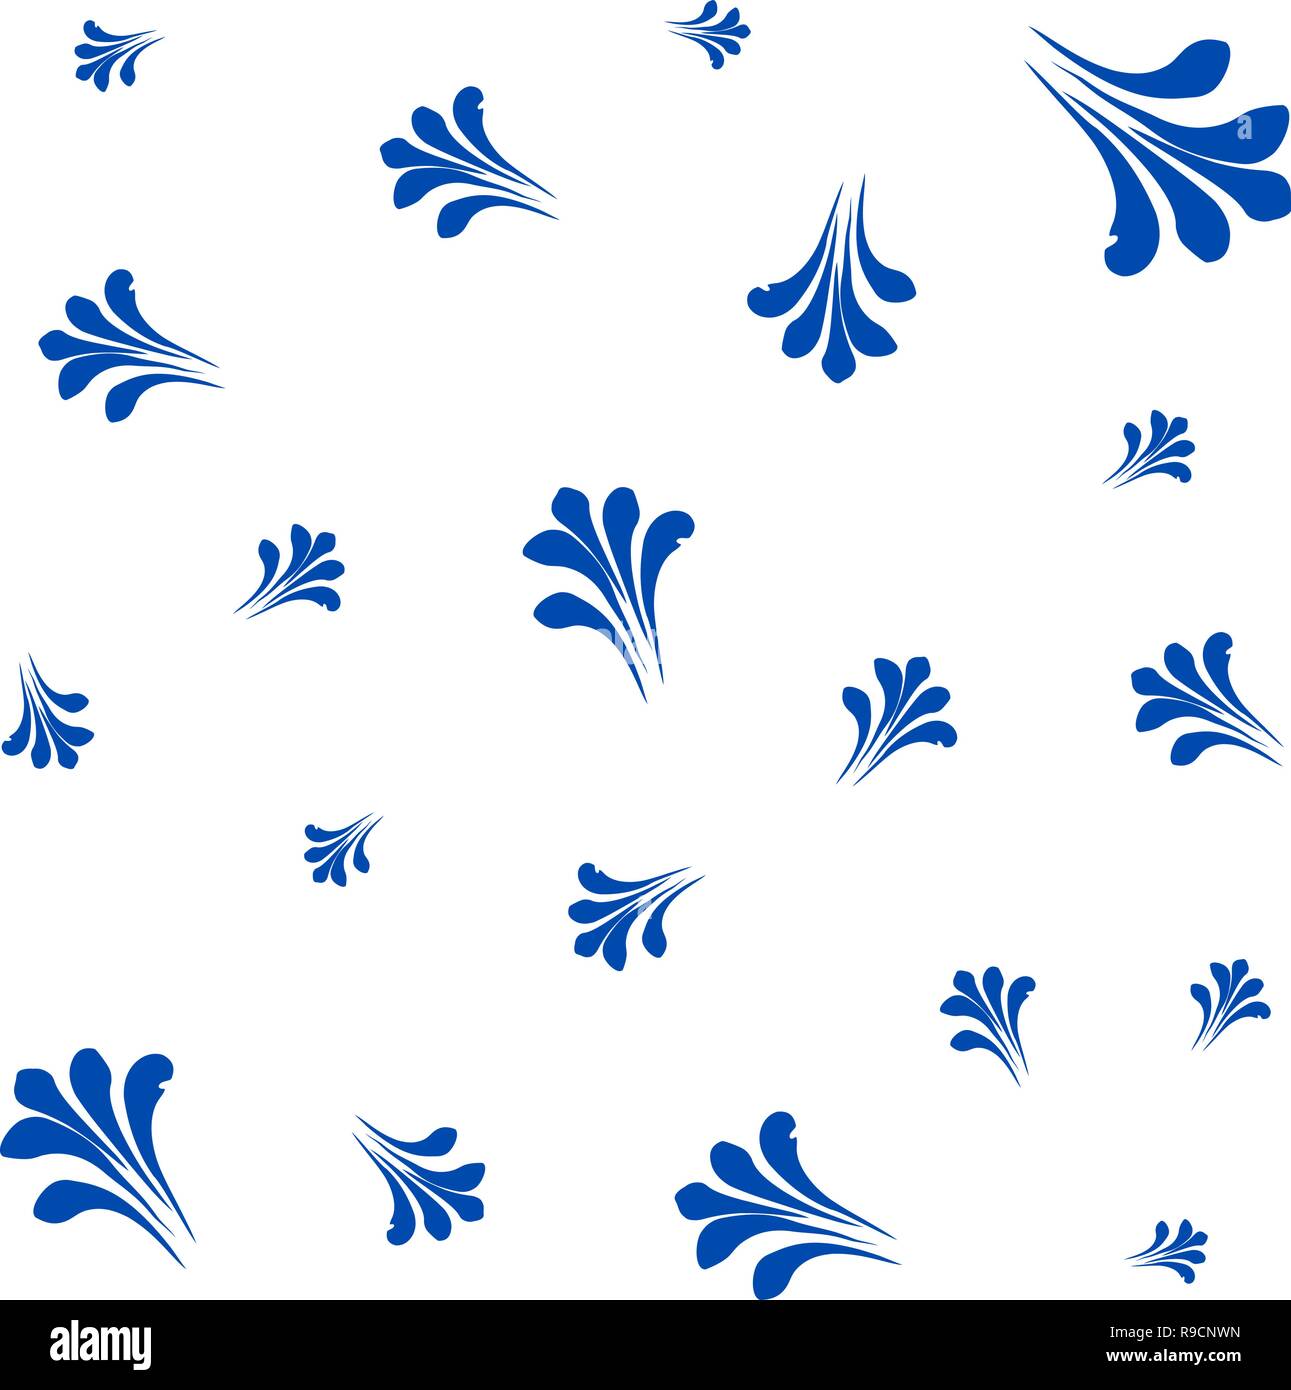 Merry ganz Karte urlaub Einladung auf blauem Hintergrund mit floralen Frosty ornament Zusammensetzung eingerichtet Stock Vektor